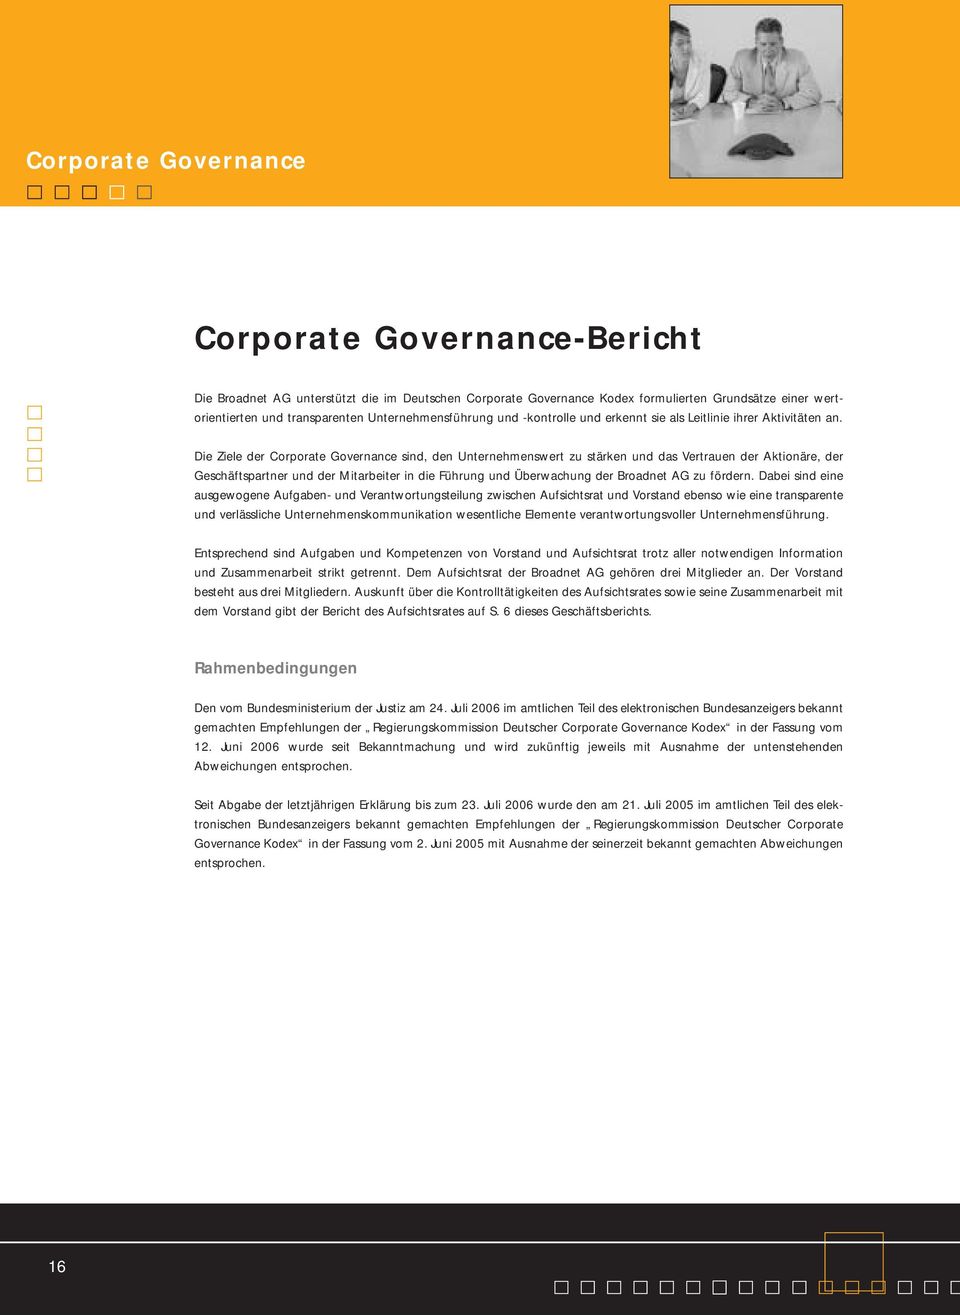 Die Ziele der Corporate Governance sind, den Unternehmenswert zu stärken und das Vertrauen der Aktionäre, der Geschäftspartner und der Mitarbeiter in die Führung und Überwachung der Broadnet AG zu